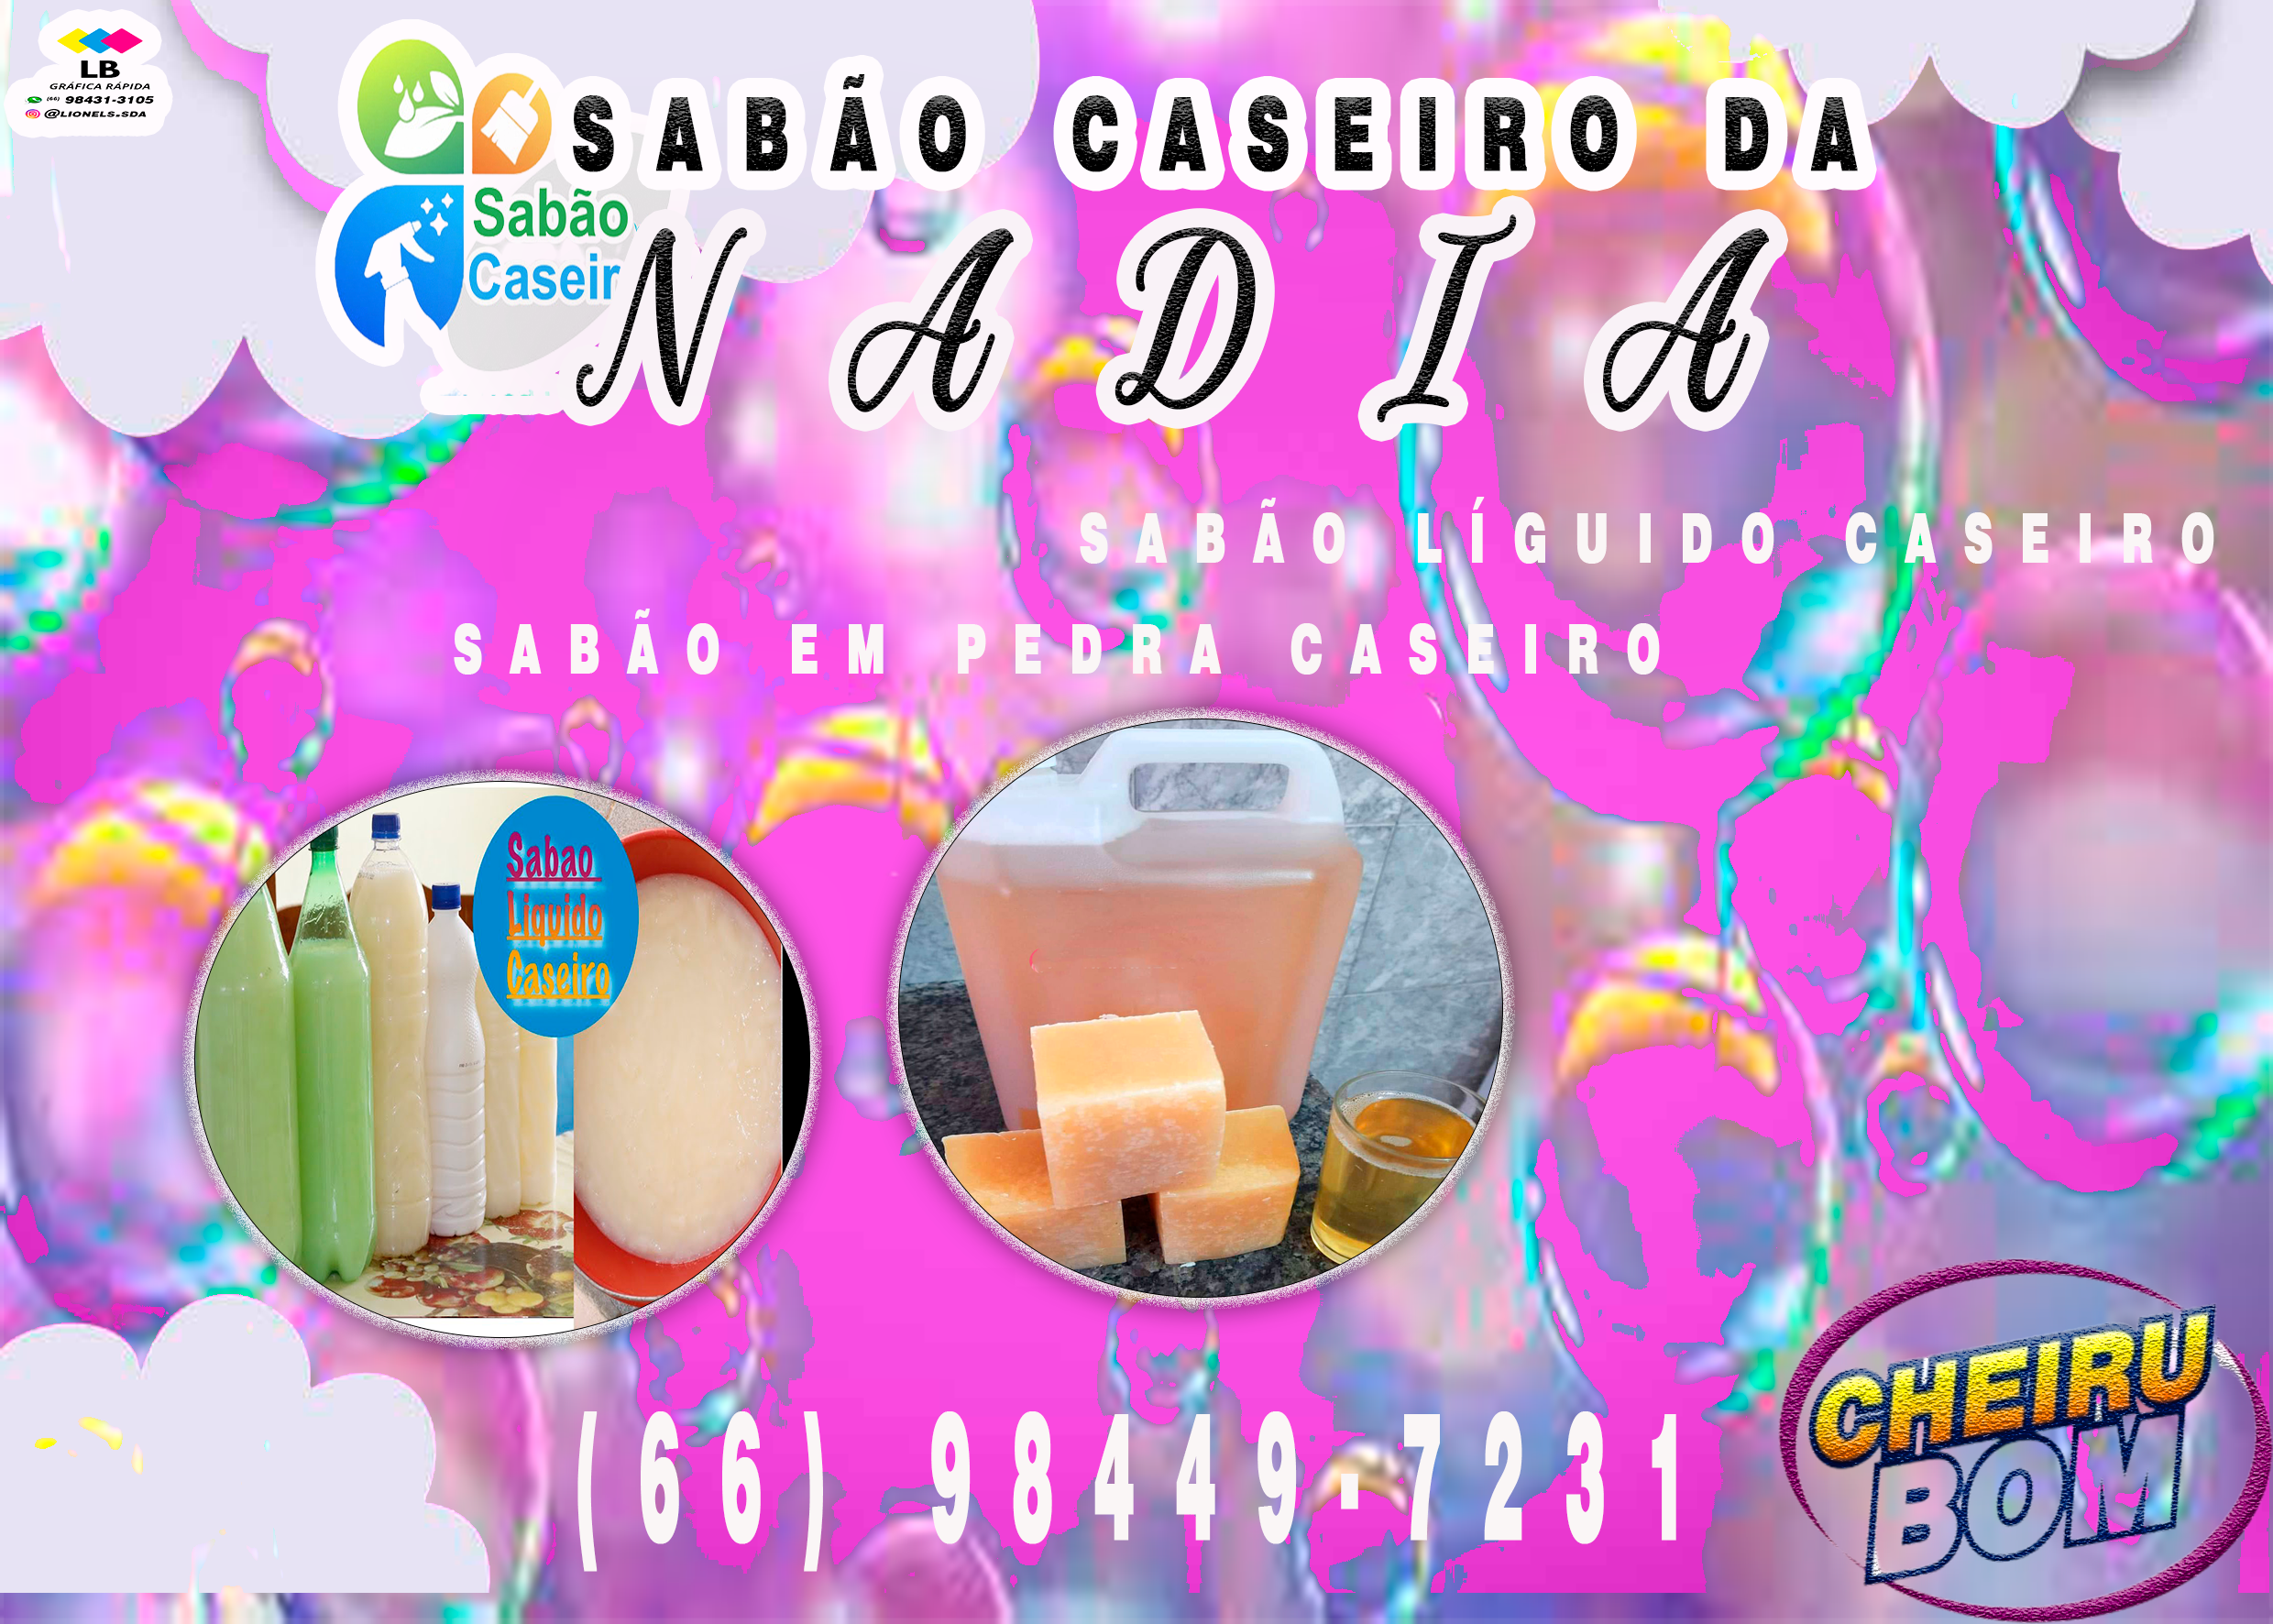 SABÃO CASEIRO DA NADÍA